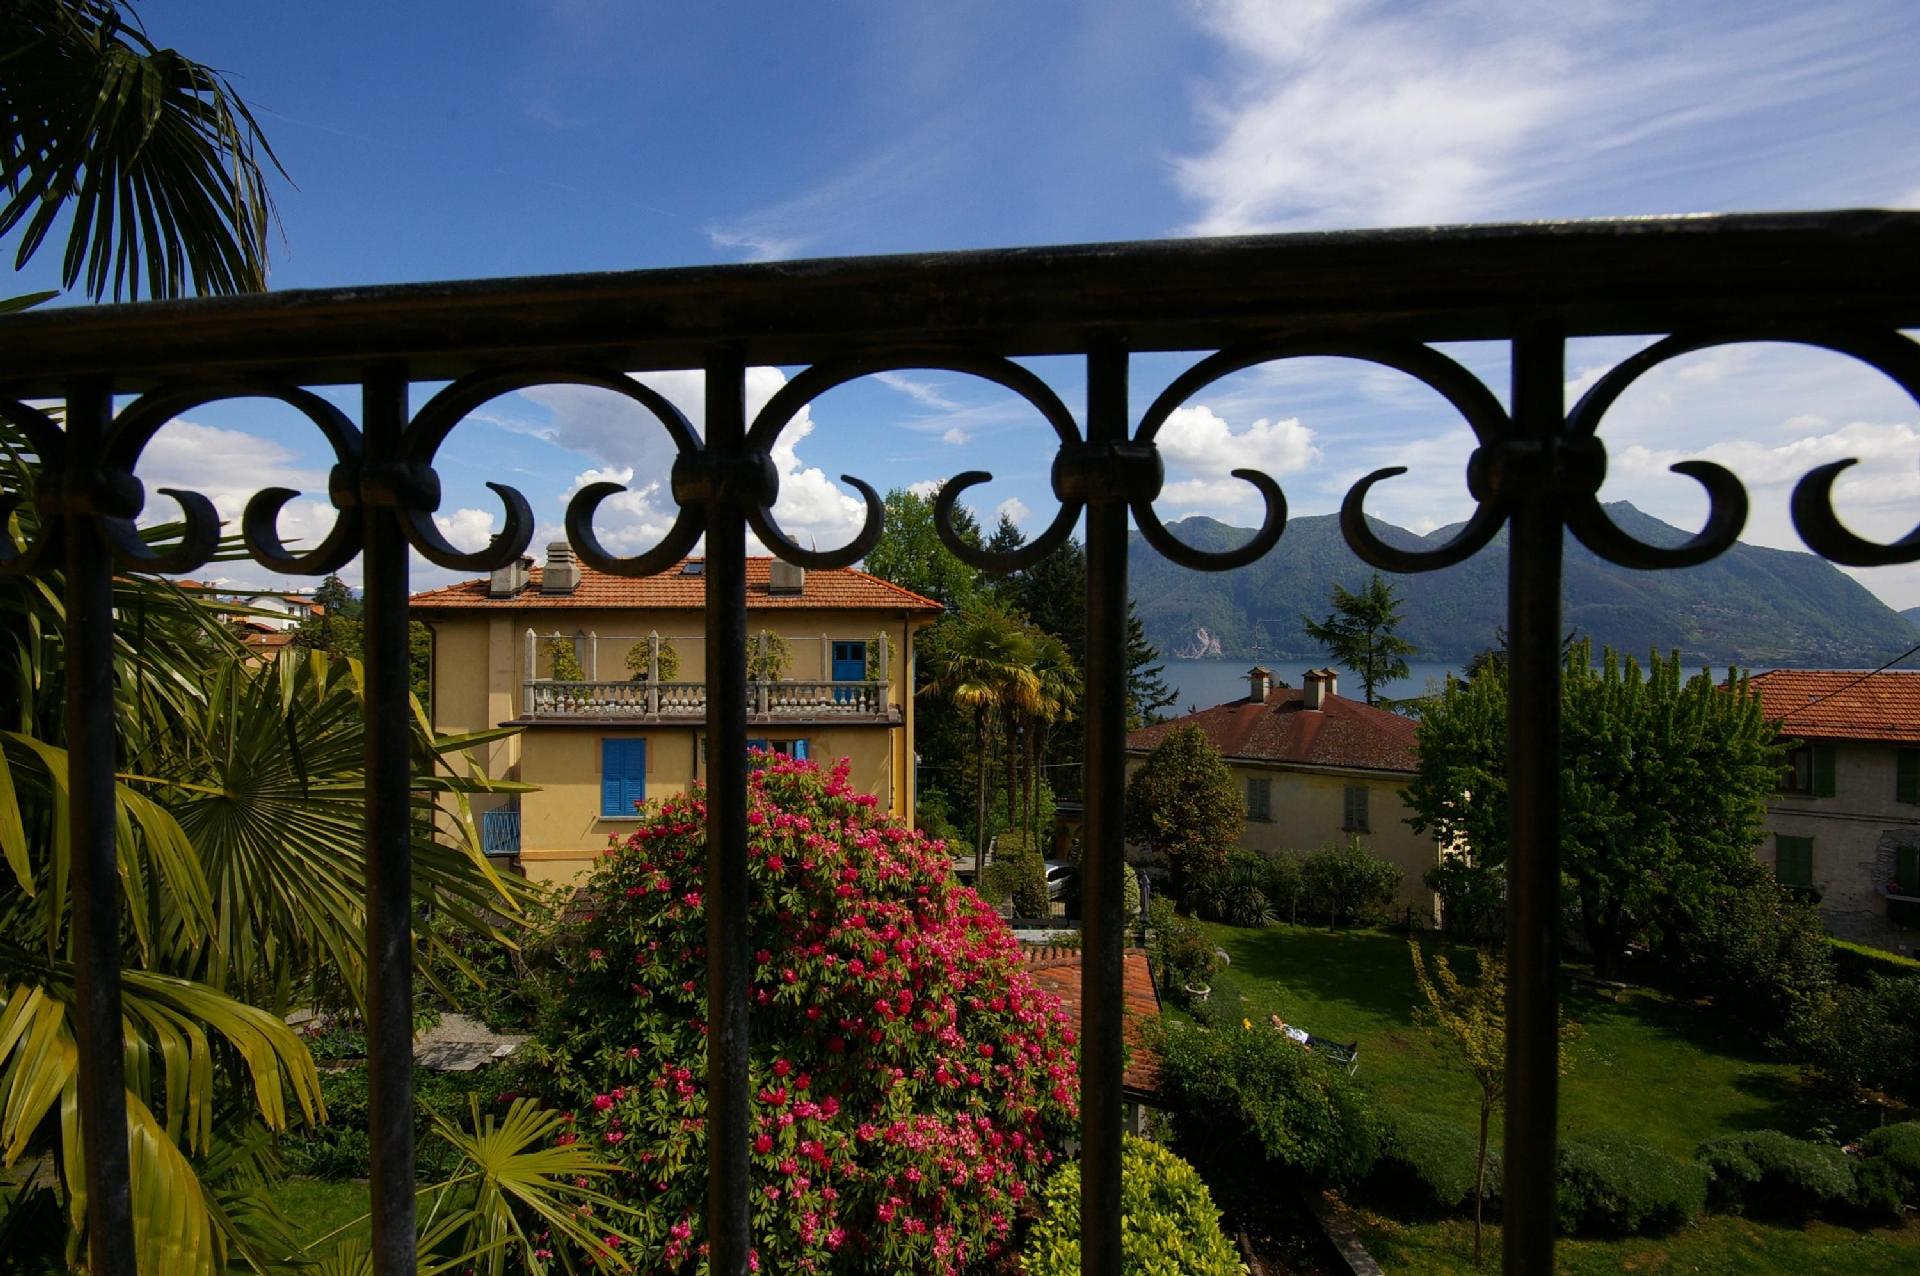 Wohnung in Biganzolo mit Großem Garten Ferienhaus in Italien